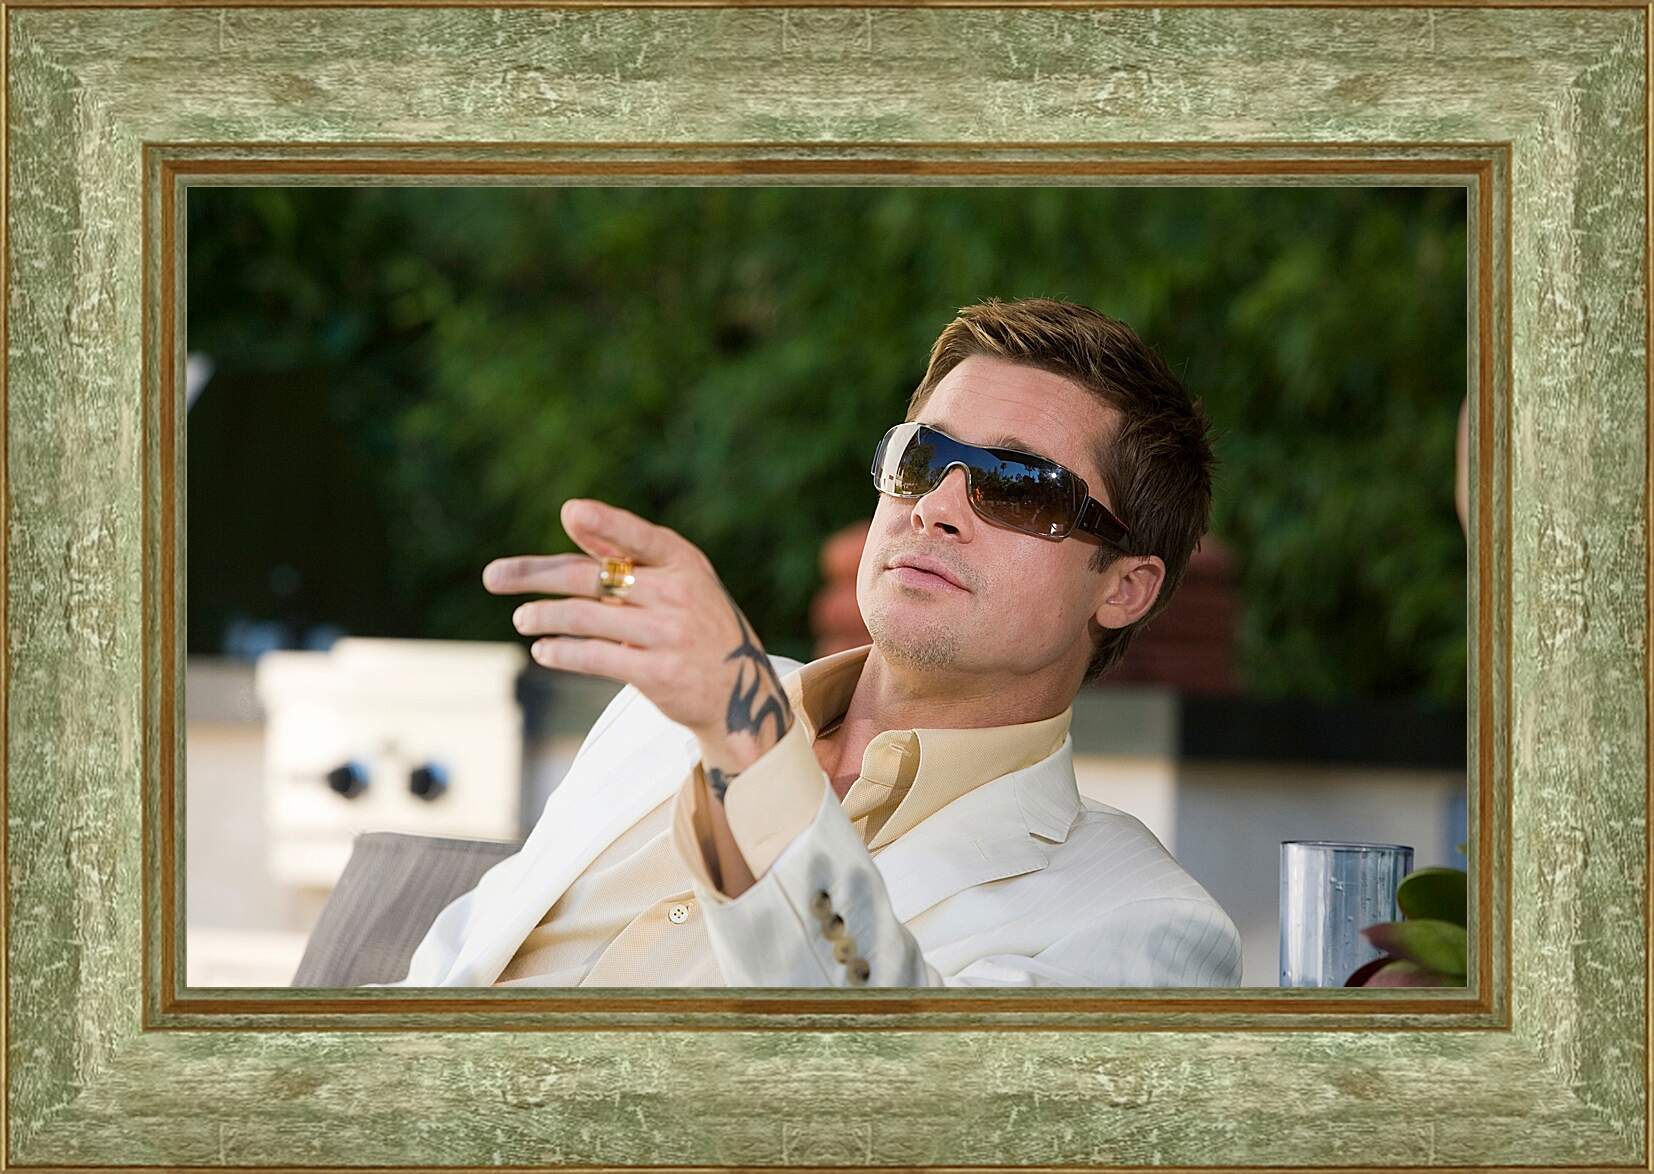 Картина в раме - Брэд Питт. Brad Pitt